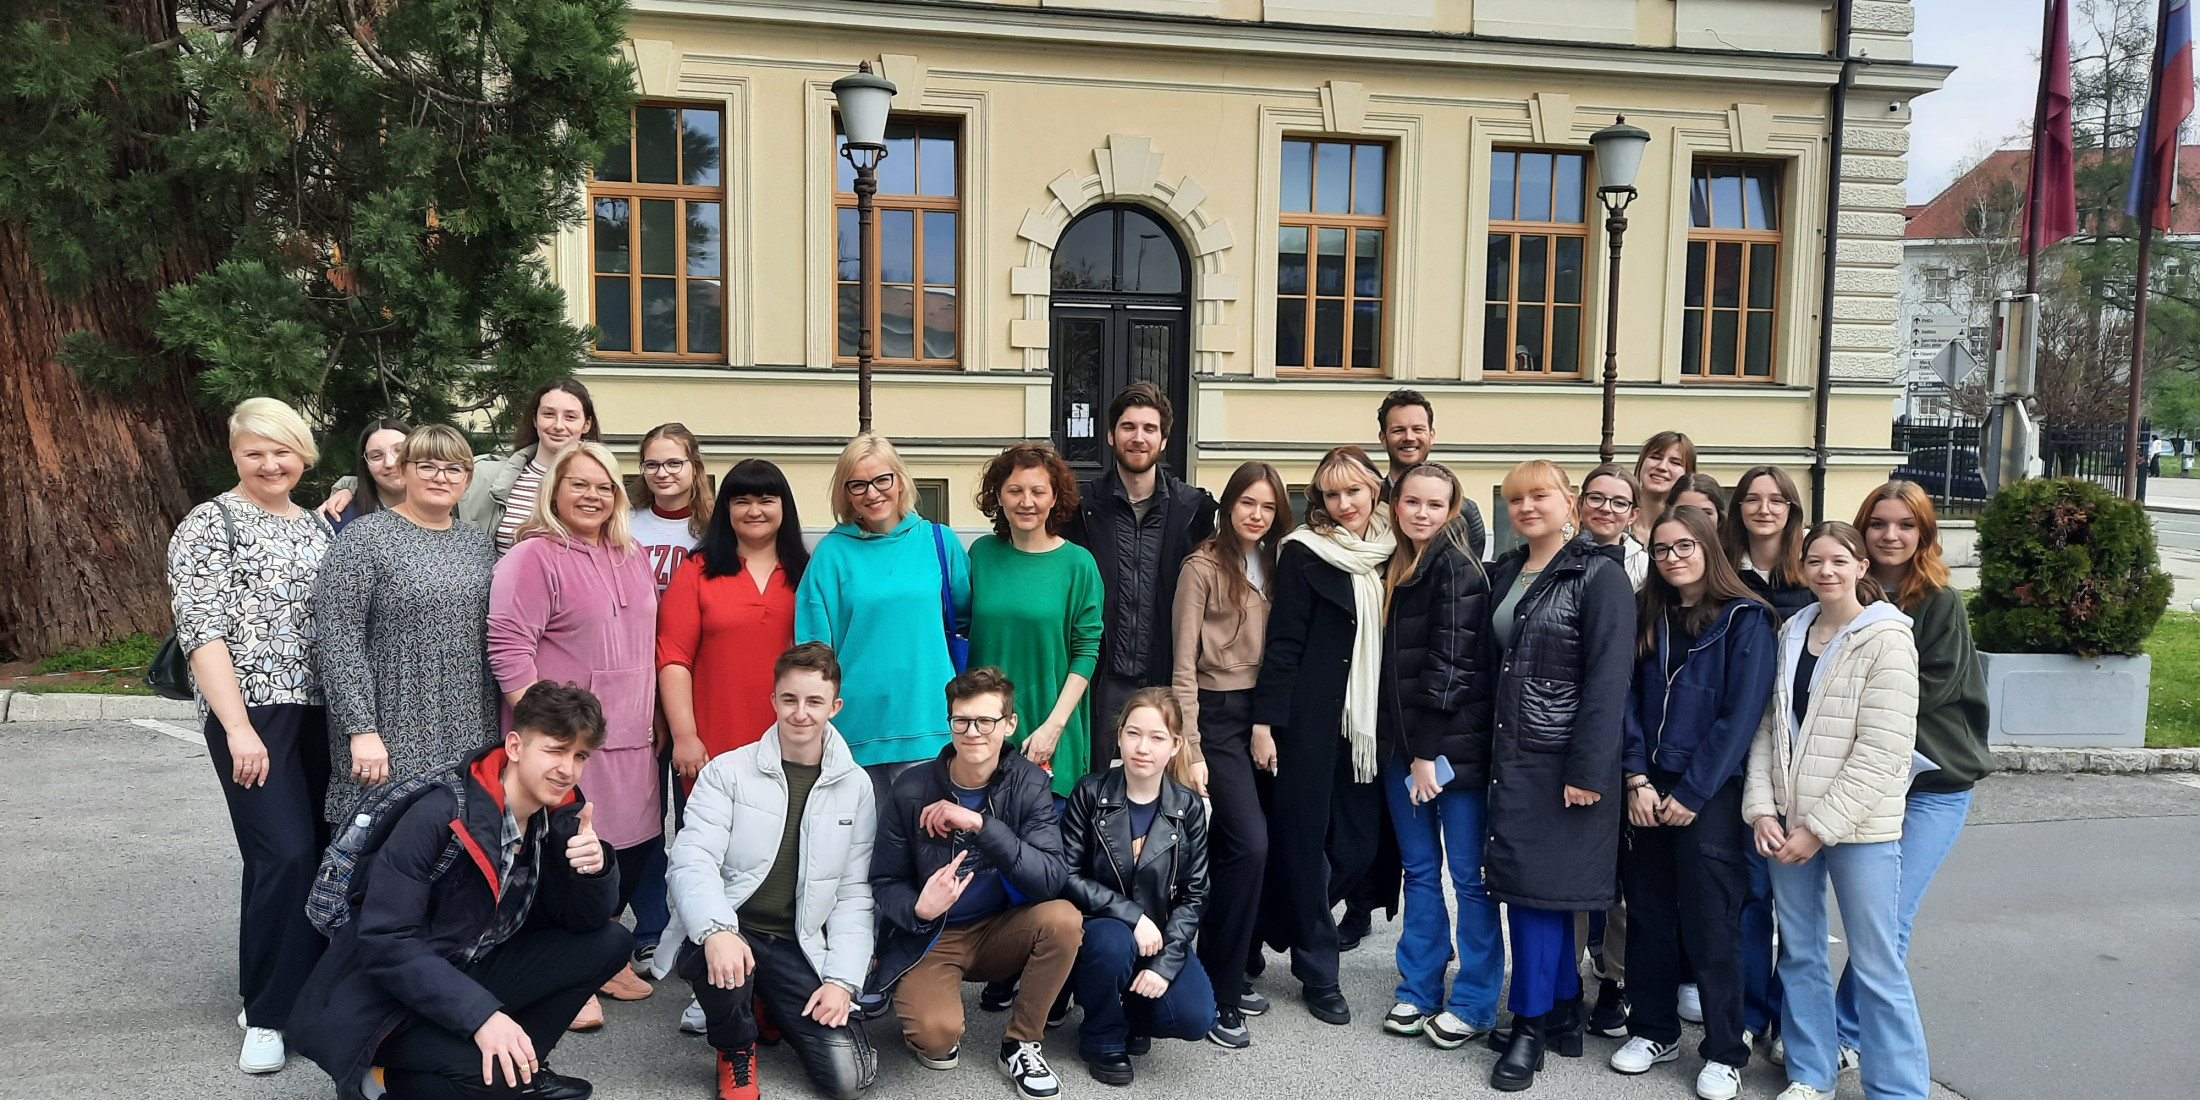 Dijaki Marijampoles Suduvos Gymnasium iz Litve so obiskali Gimnazijo Kranj